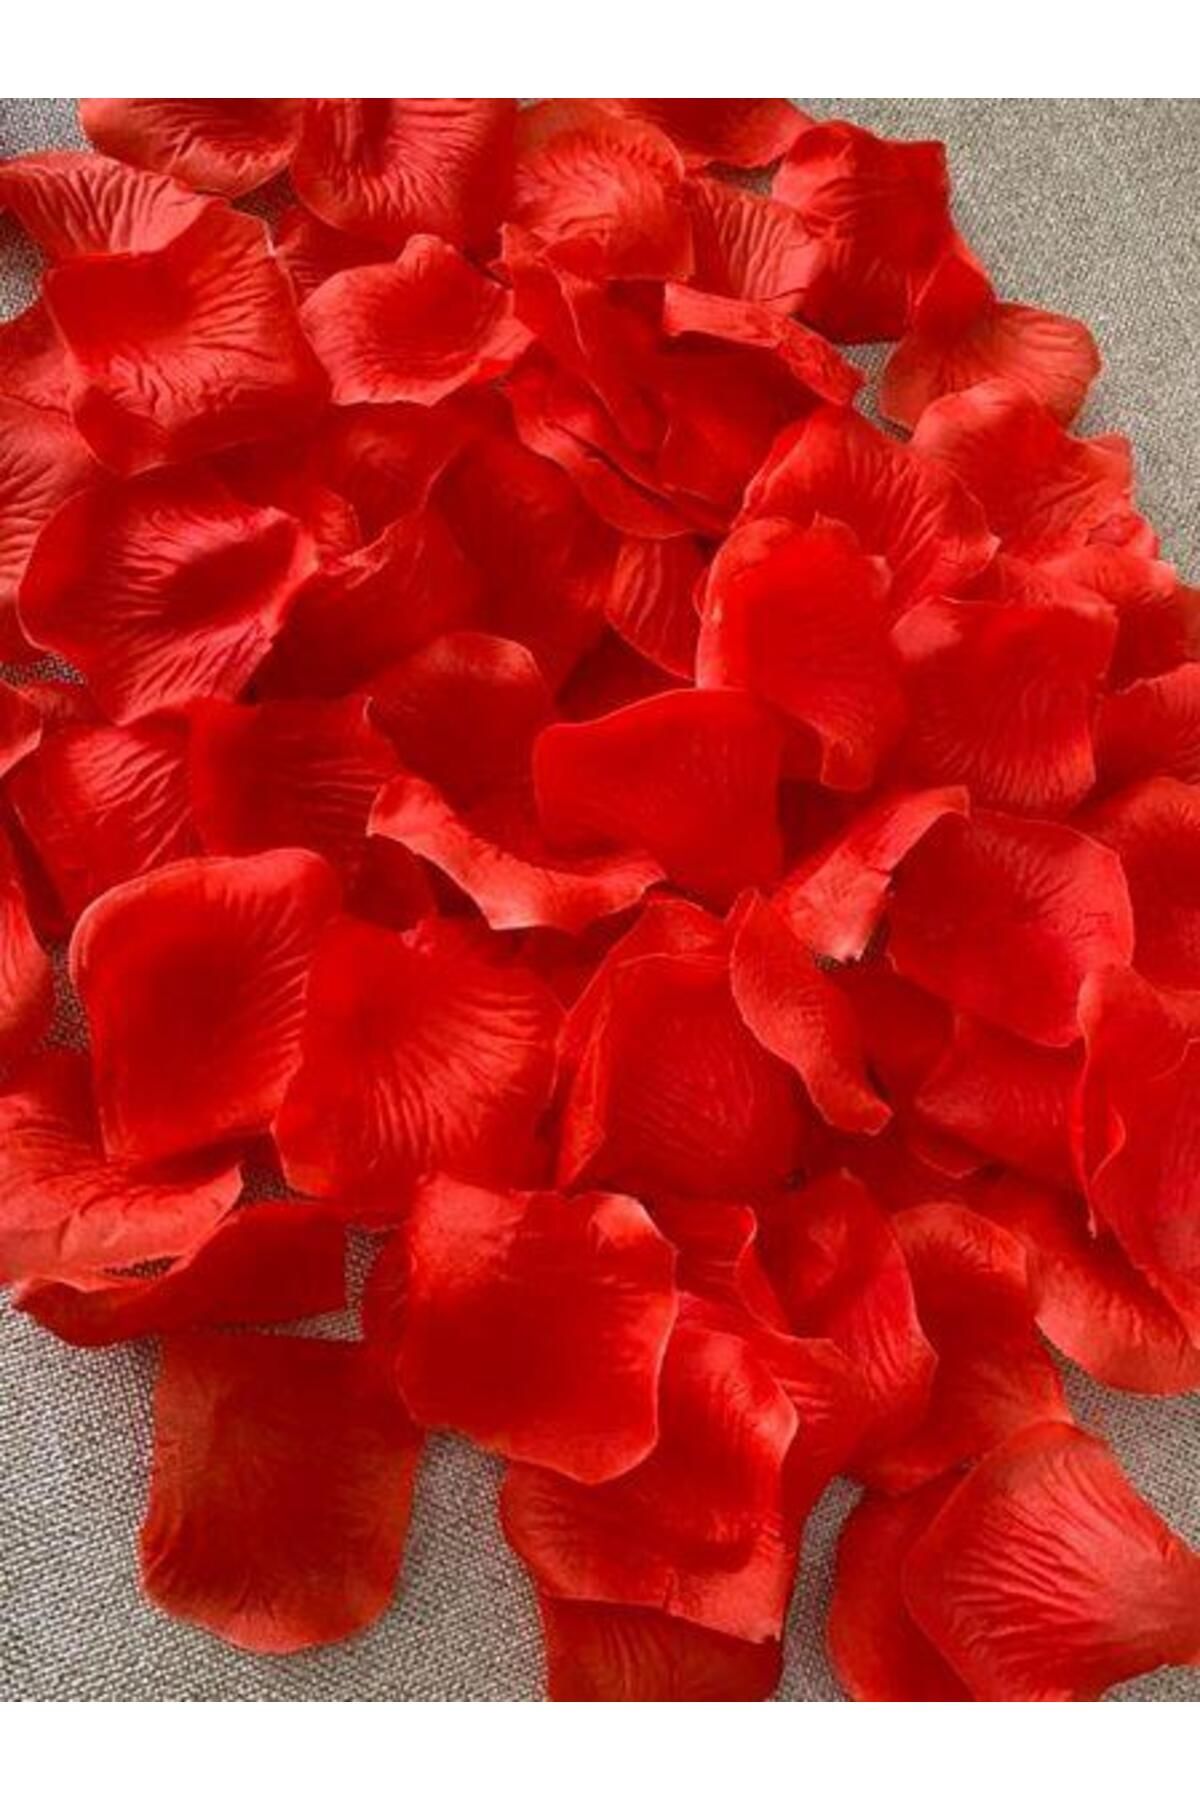 Hasyılmaz Yapay Kırmızı Gül Yaprağı 5x5cm 96 Adet - Yapay Gül Yaprak